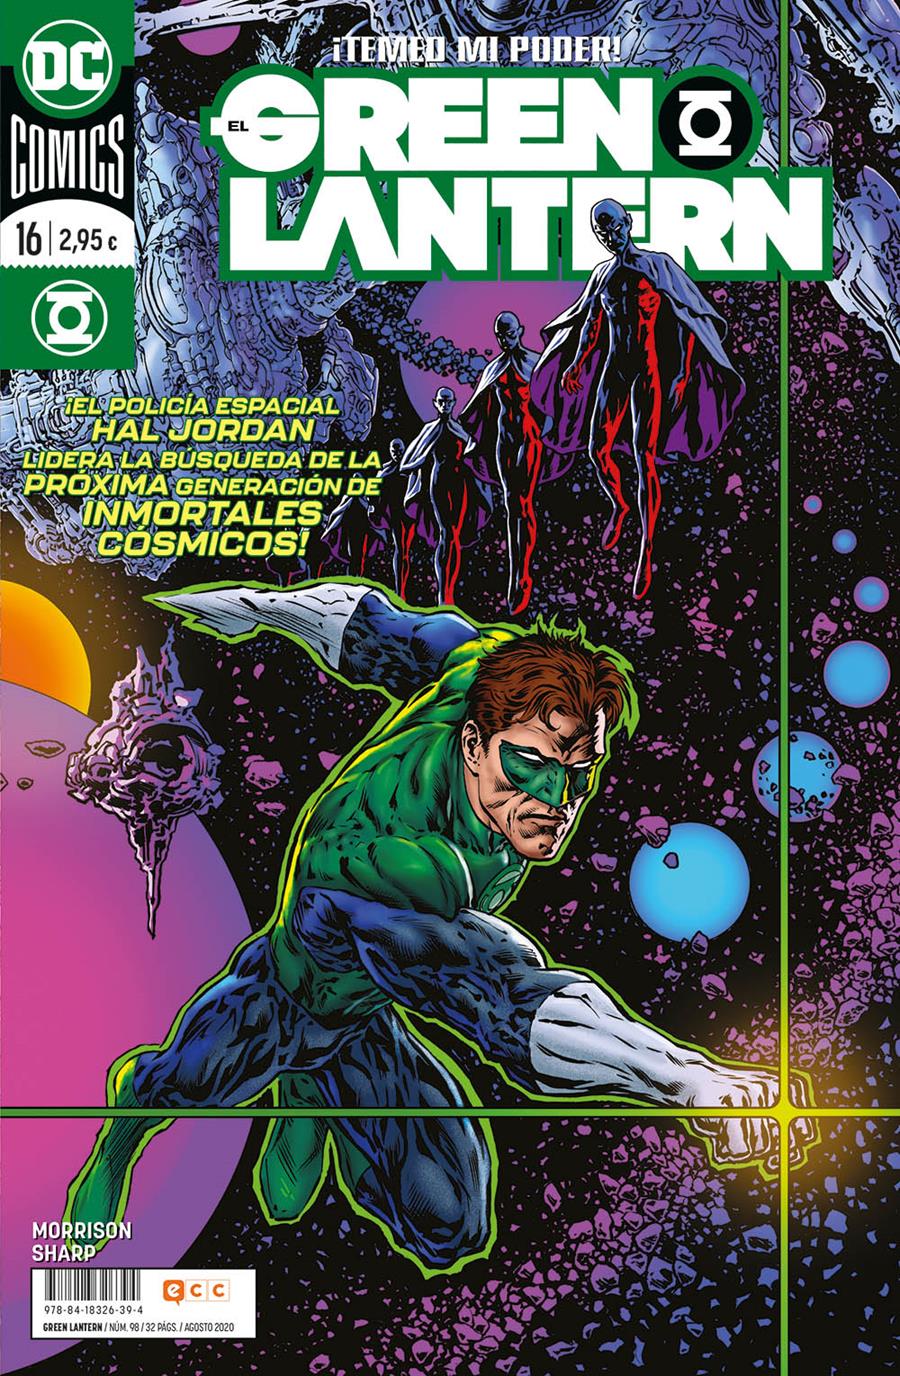 El Green Lantern núm. 98/ 16 | N0920-ECC28 | Grant Morrison / Liam Sharp | Terra de Còmic - Tu tienda de cómics online especializada en cómics, manga y merchandising